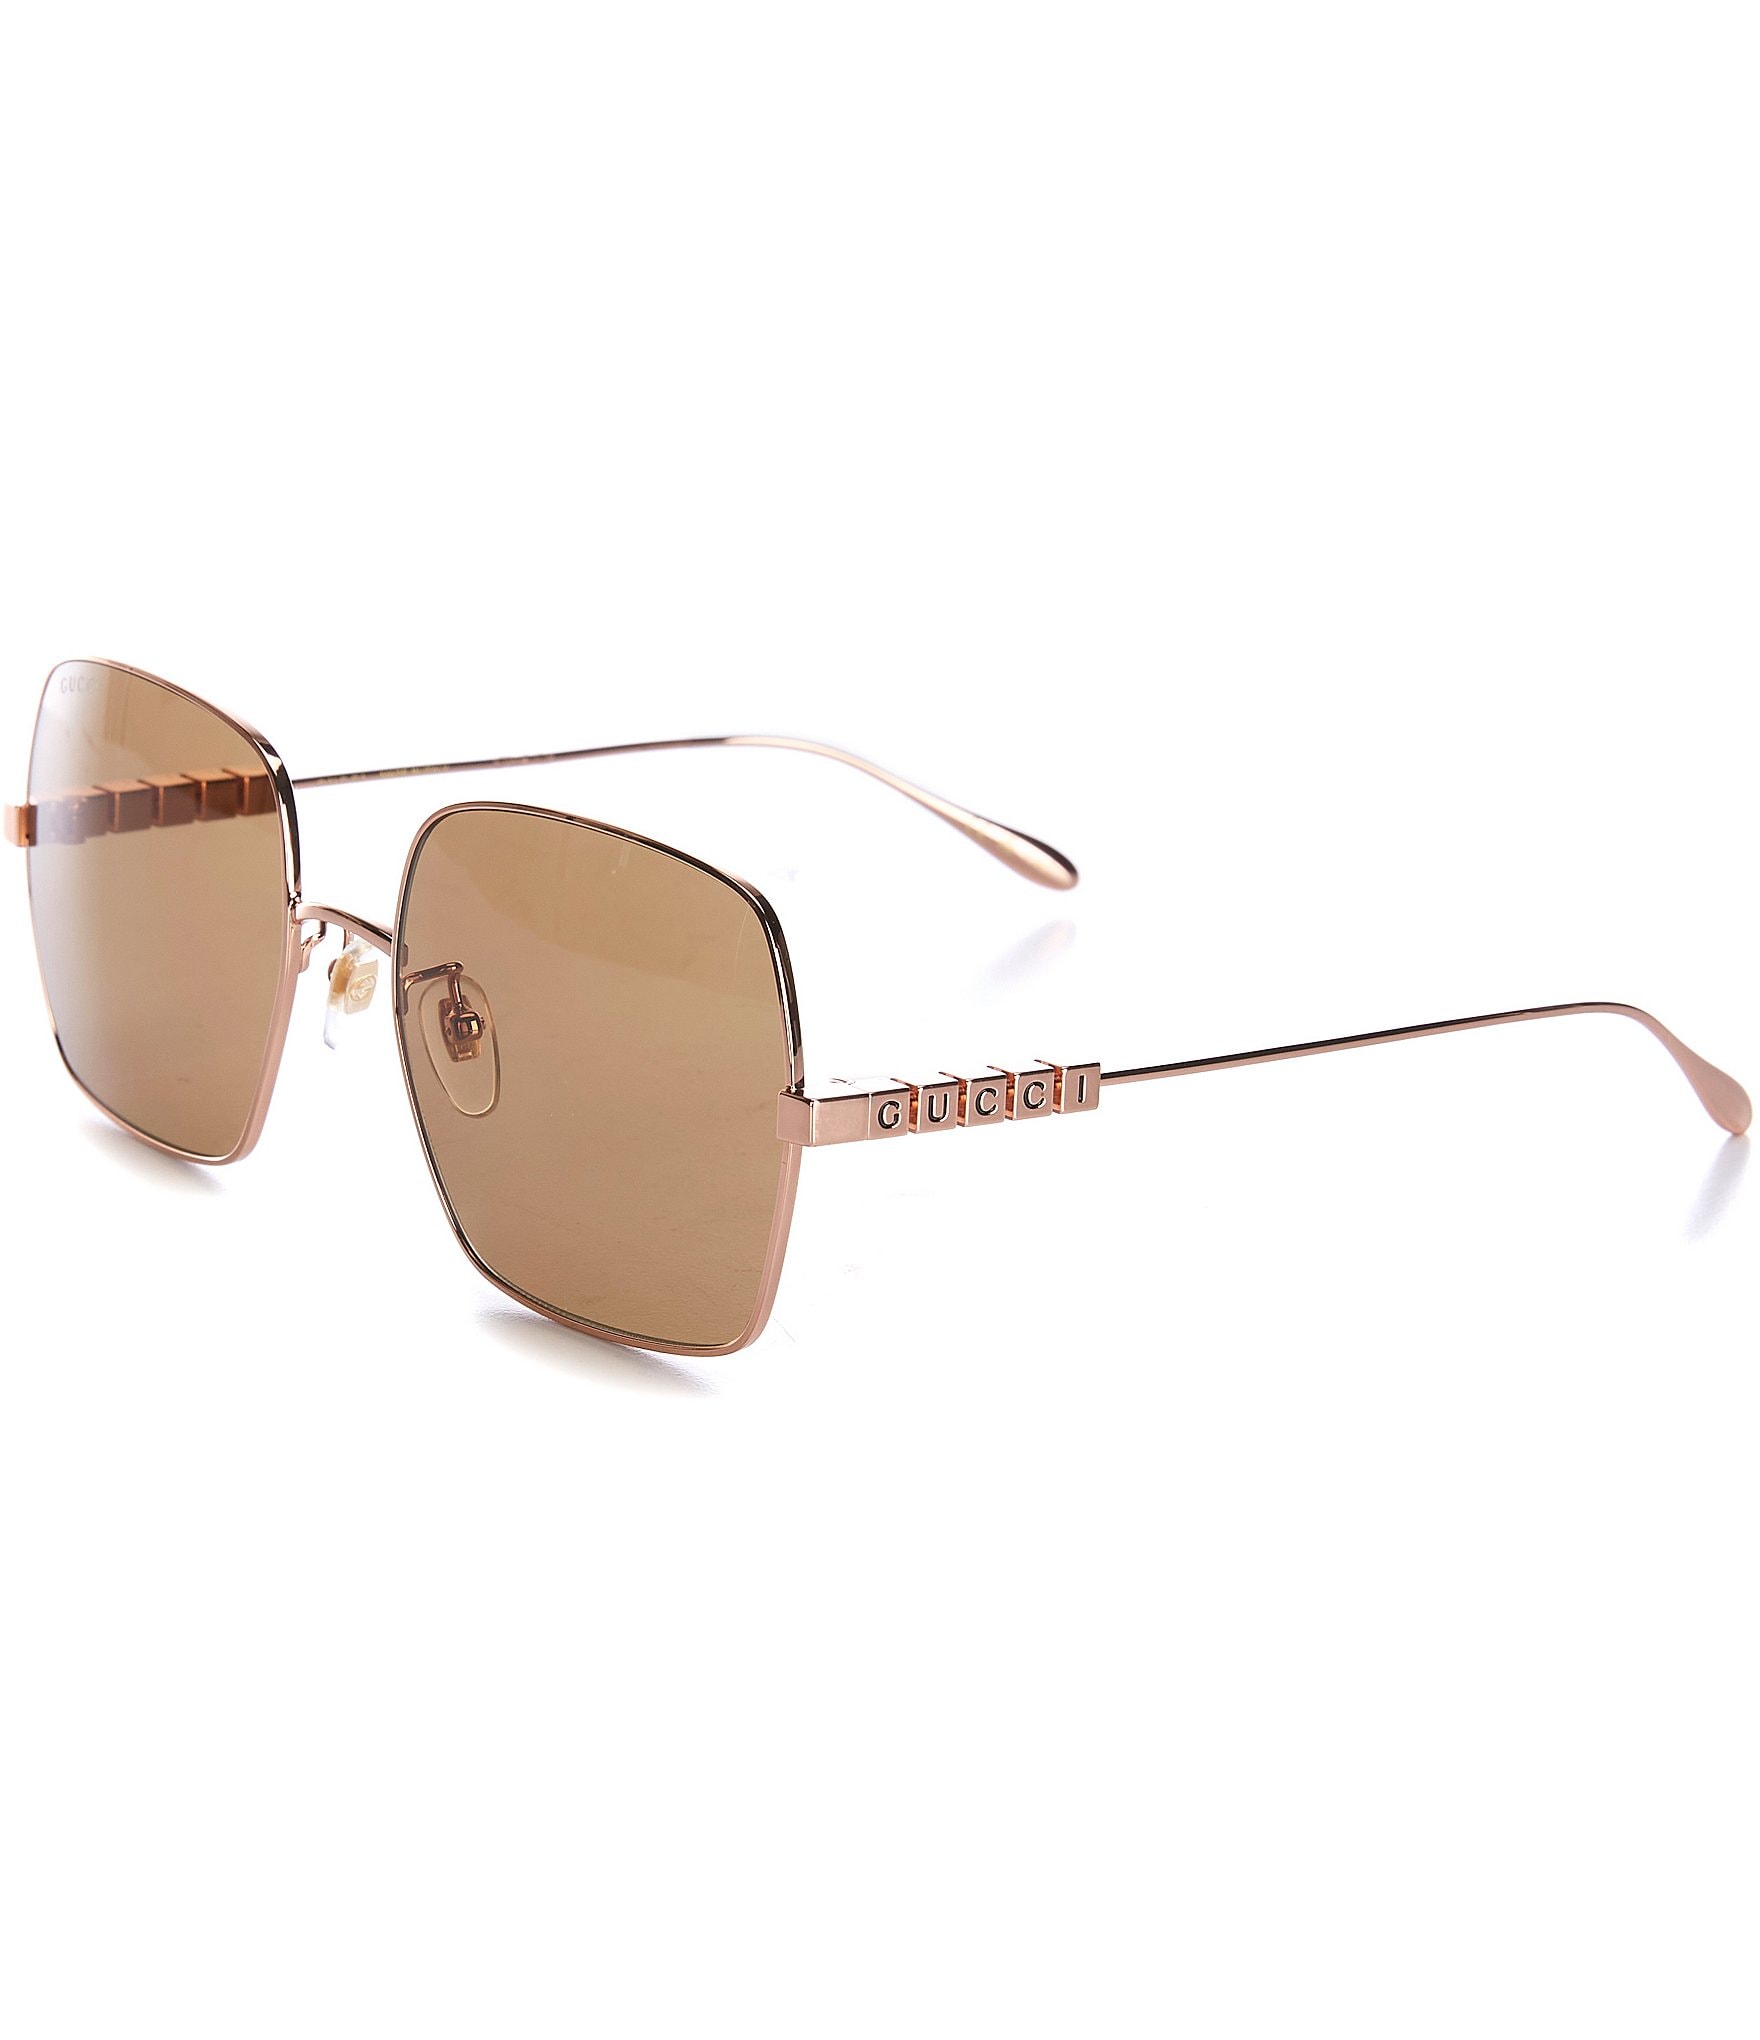 Gucci GG1278S 001 55mm - Sunglasses Gold